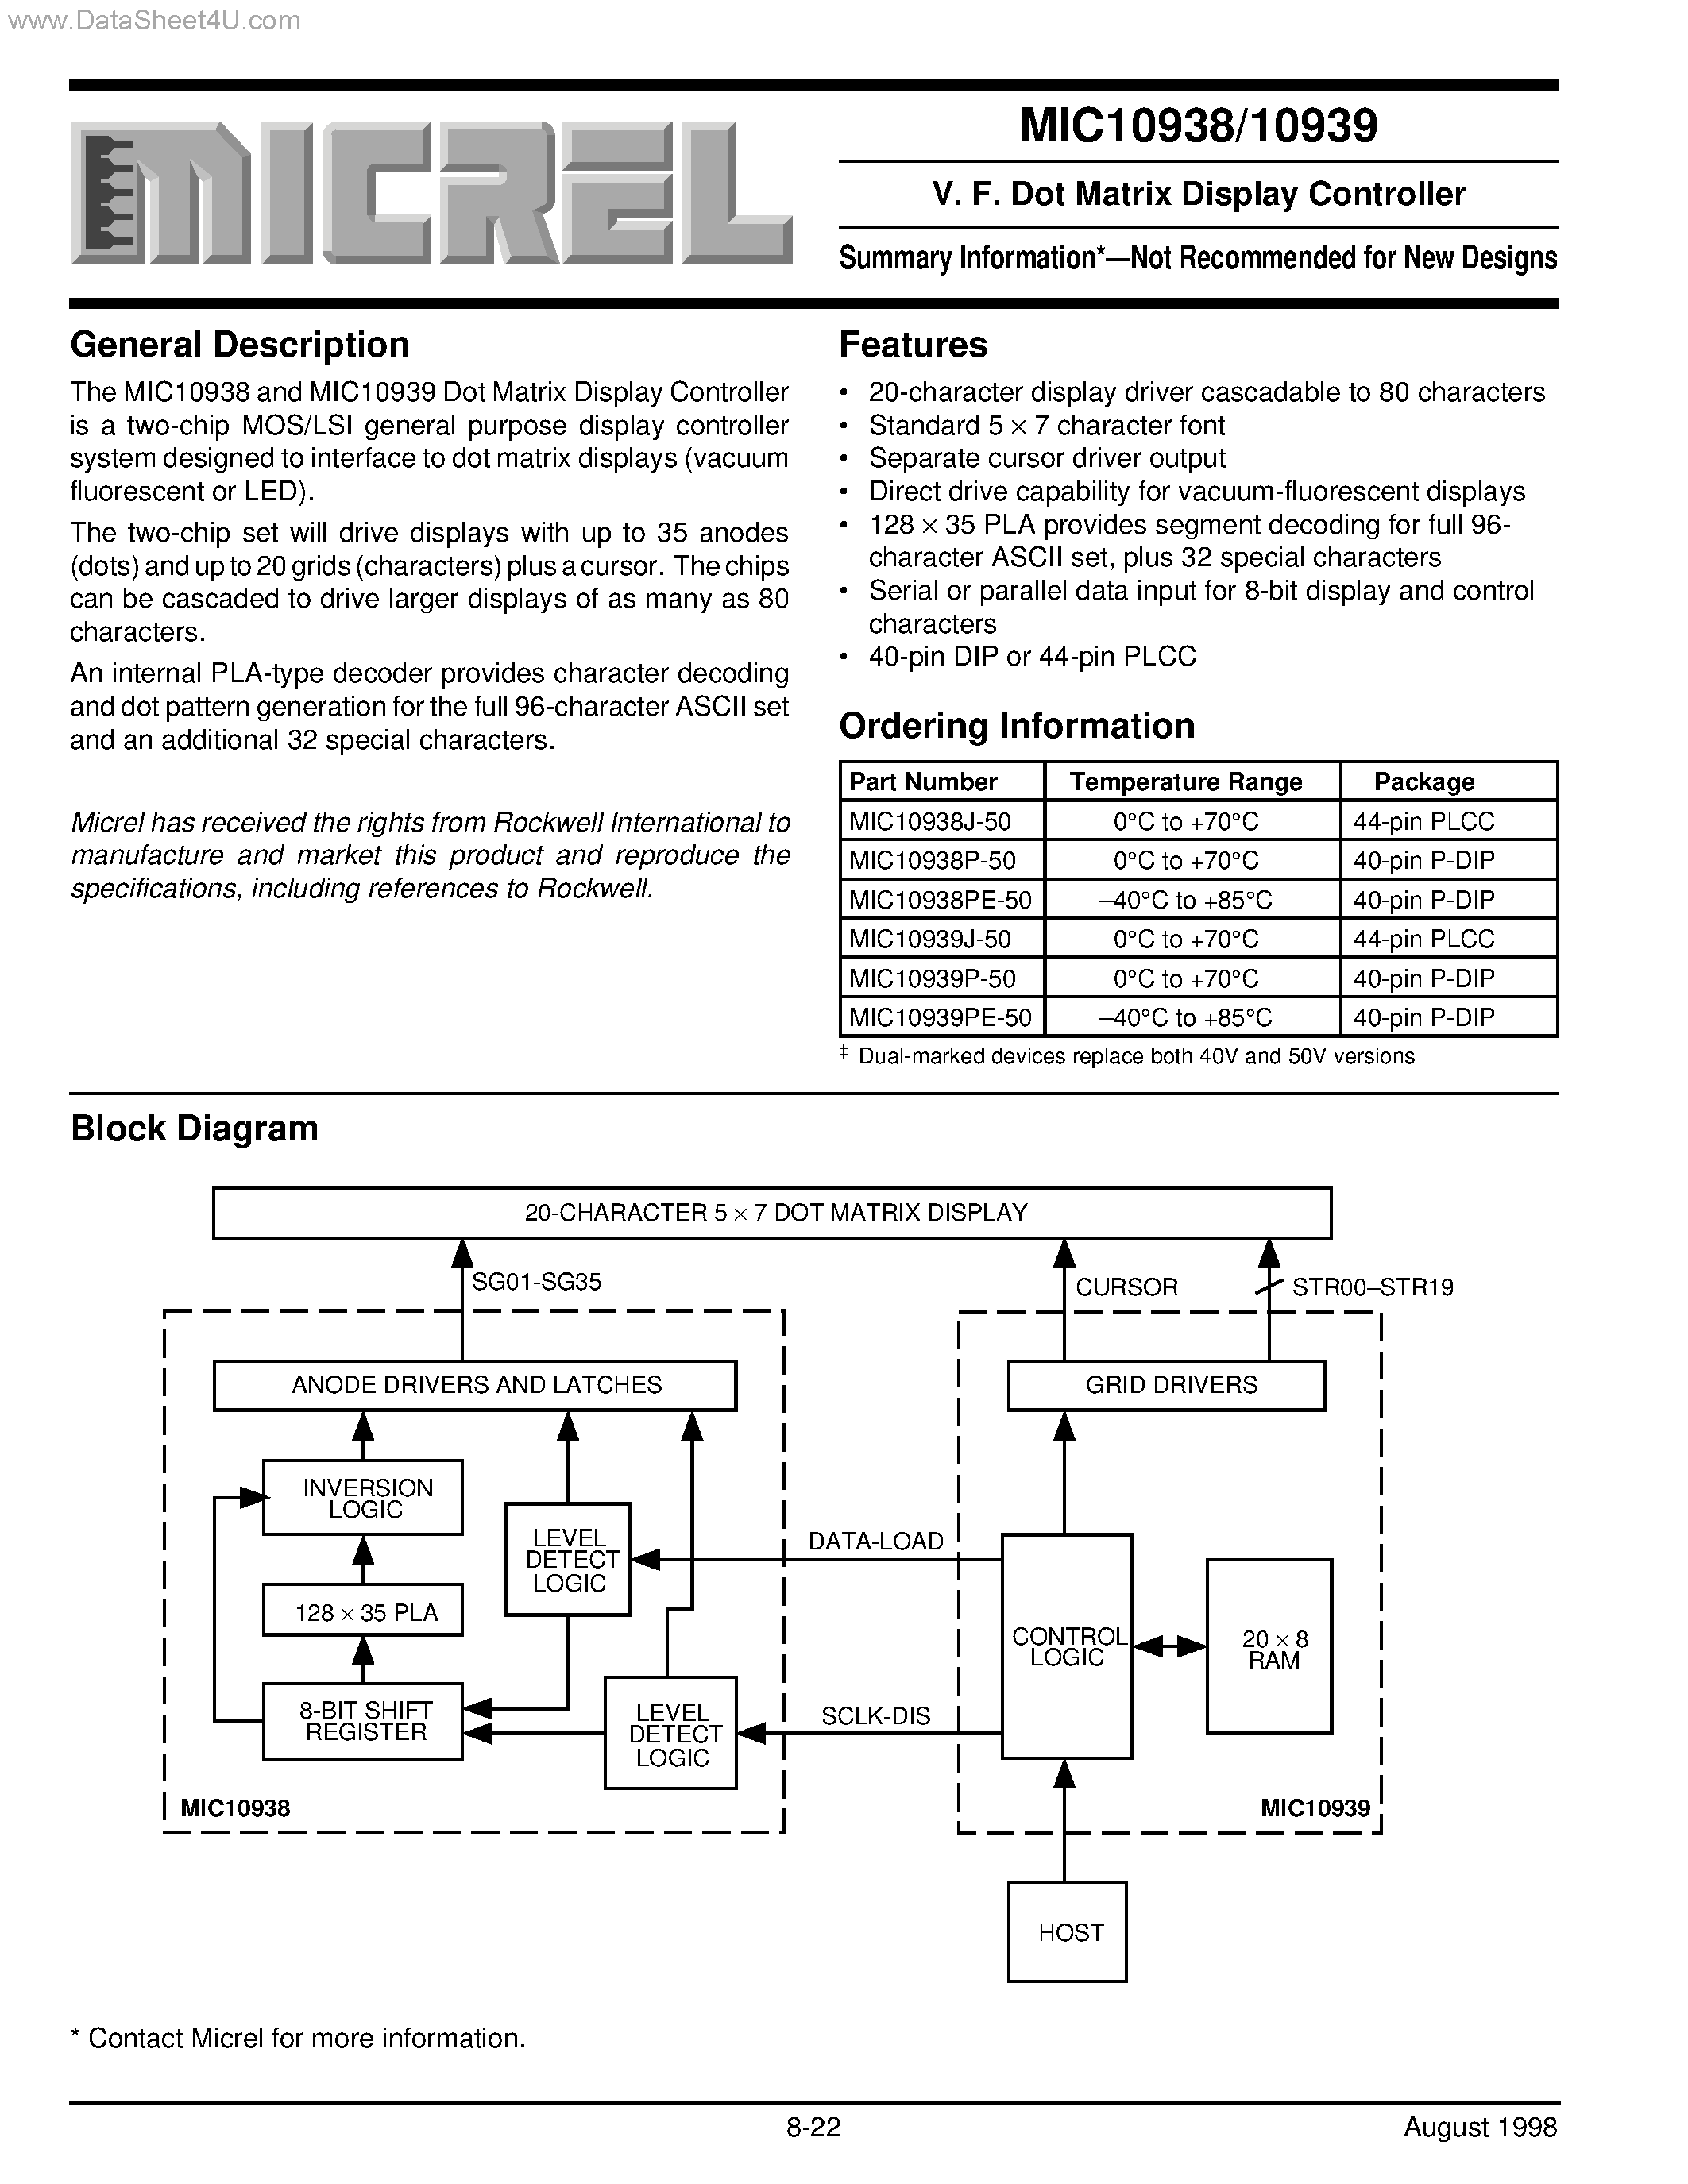 Datasheet MIC10938 - (MIC10938 / MIC10939) V. F. Dot Matrix Display Controller page 1